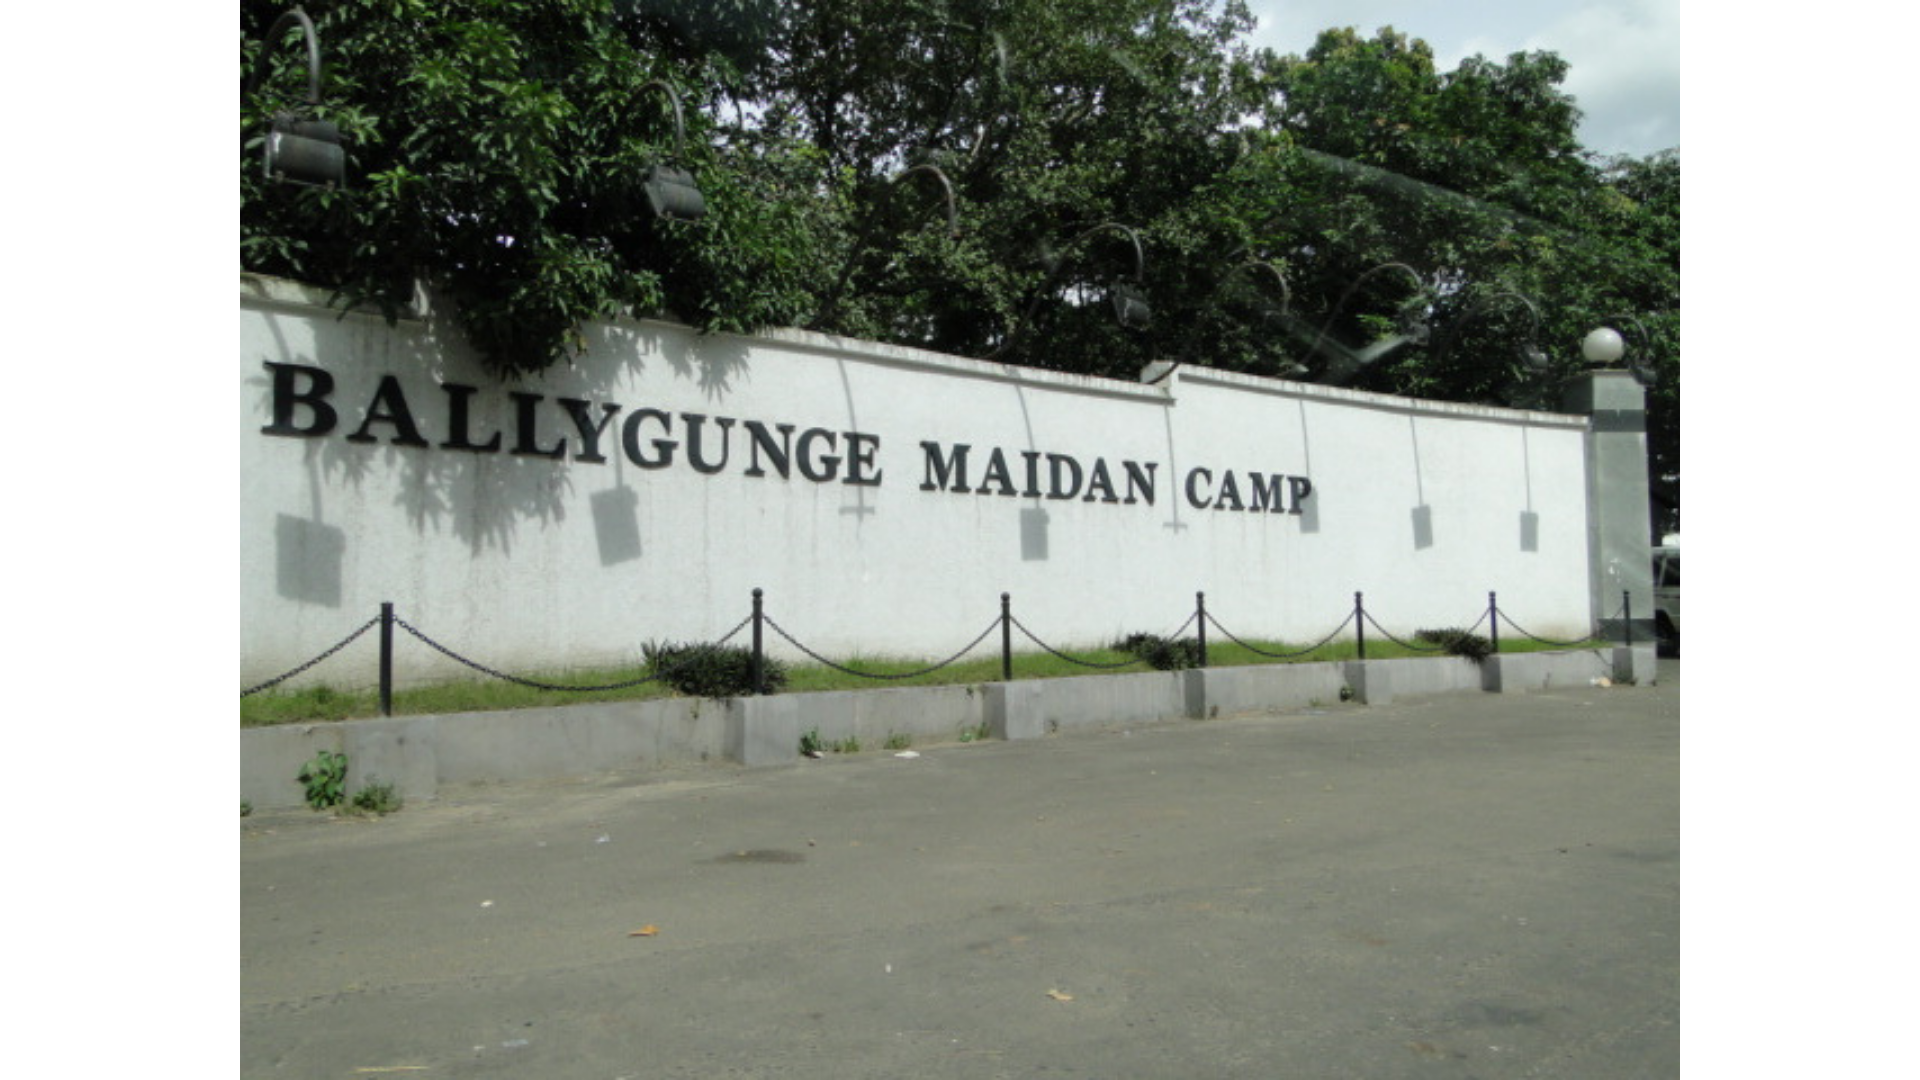 Ballygunge Maidan Camp